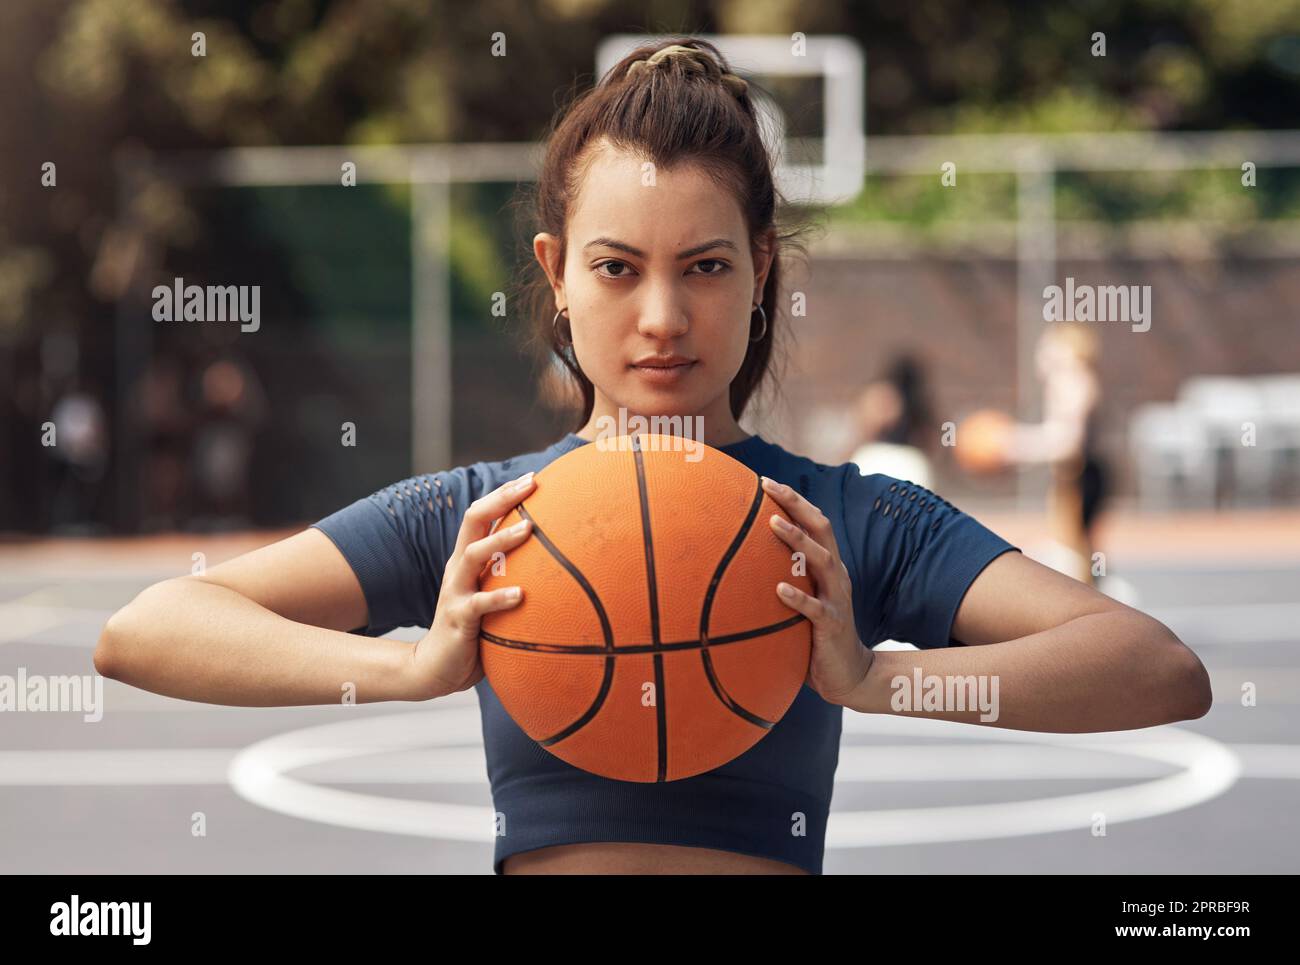 Um die Fähigkeiten zu gewinnen, braucht es Zeit und Geduld. Porträt einer sportlichen jungen Frau, die einen Basketball auf einem Sportplatz hält. Stockfoto